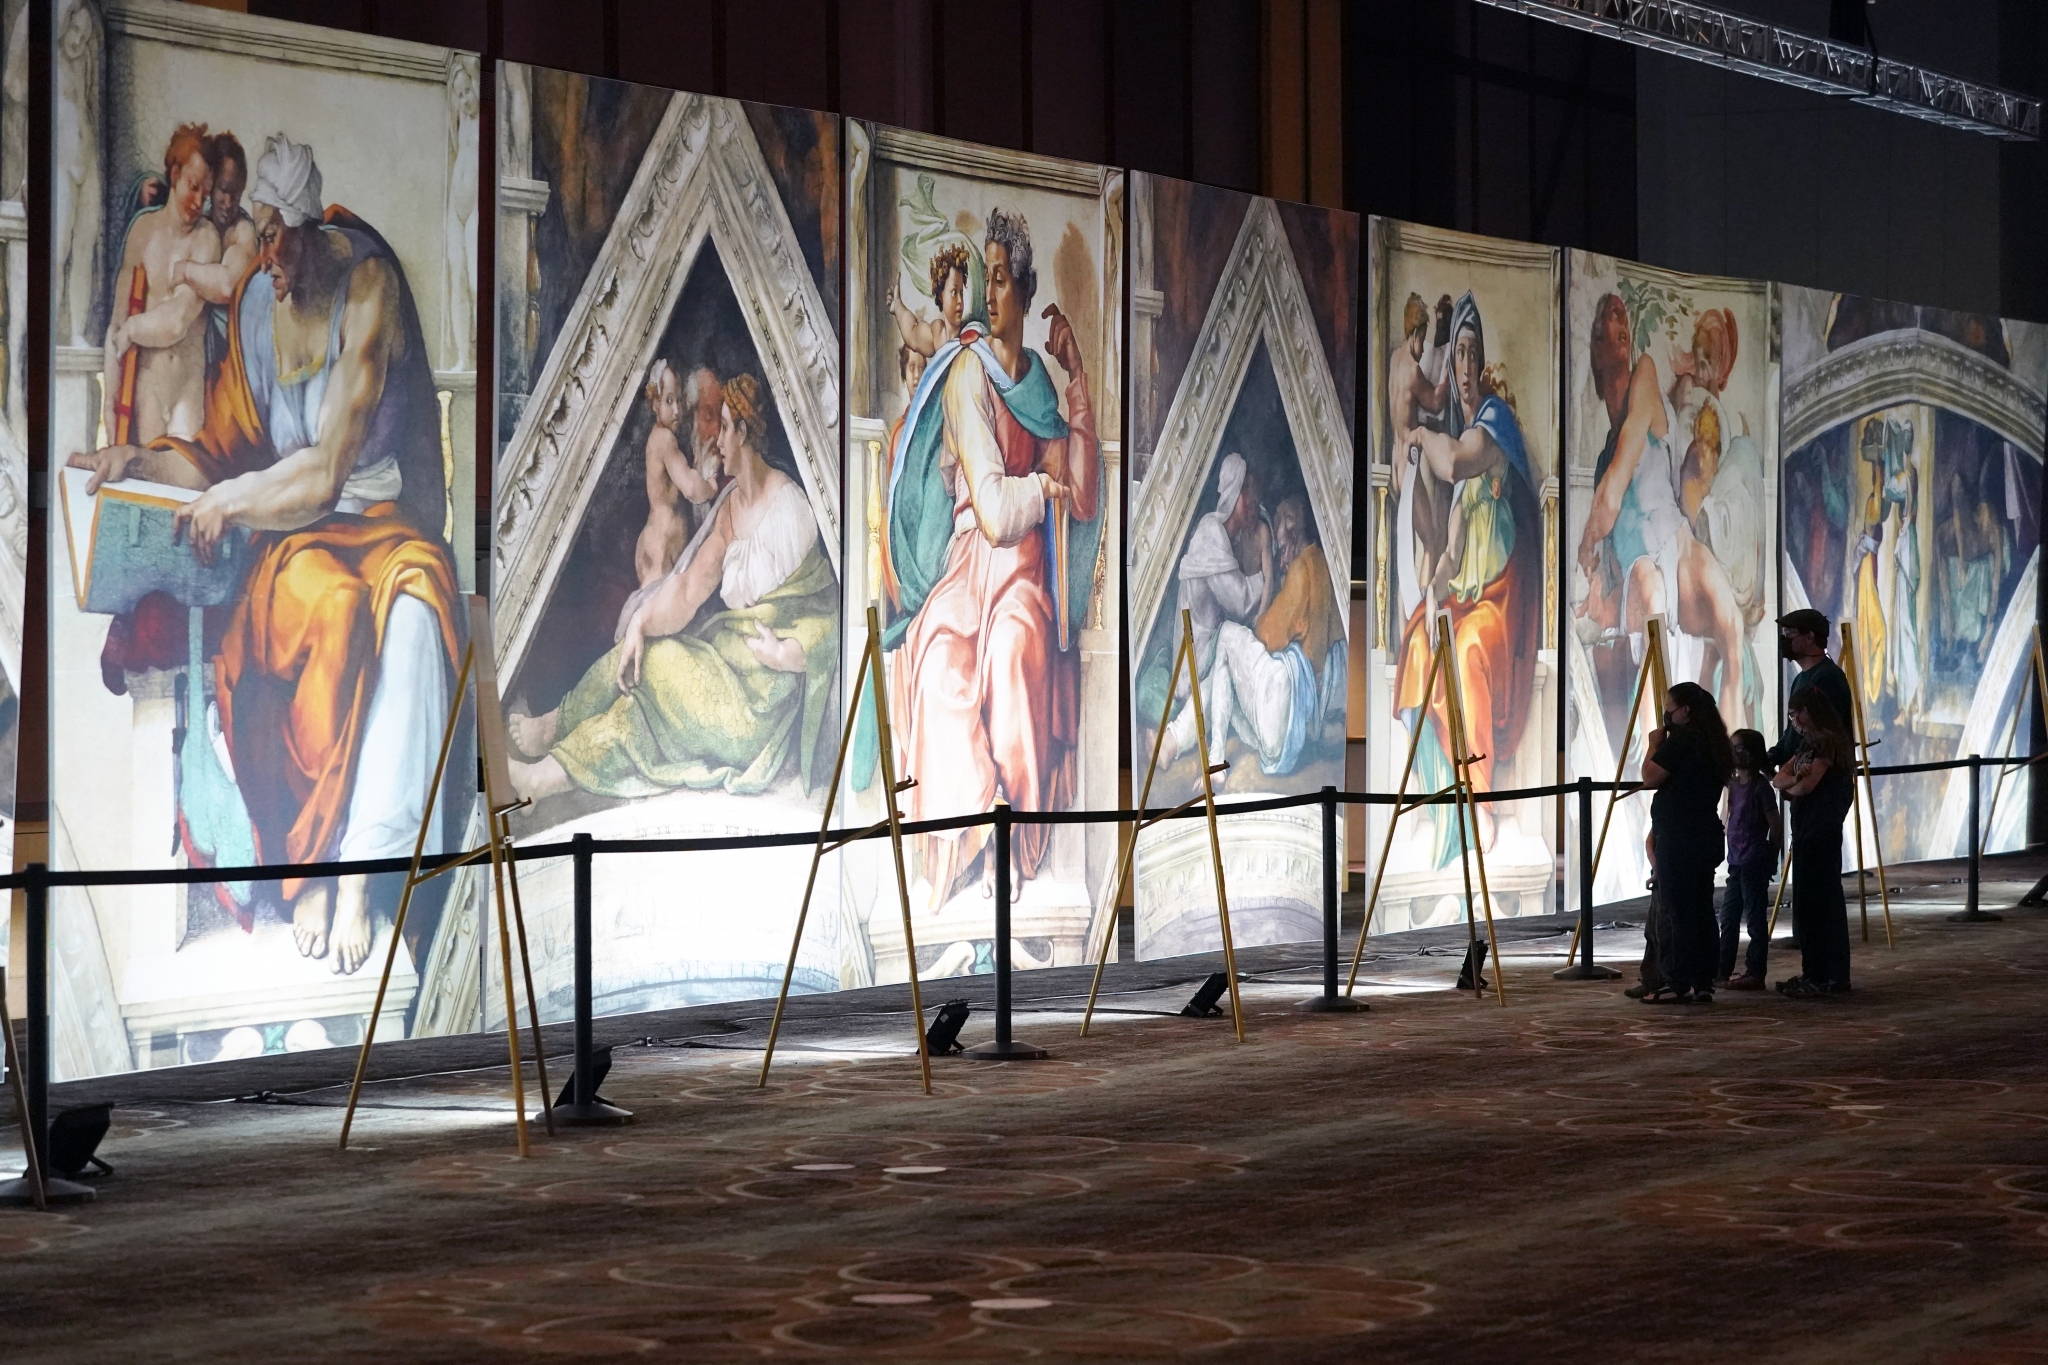 Michelangelo's Sistine Chapel: The Exhibition in San Antonio, Texas